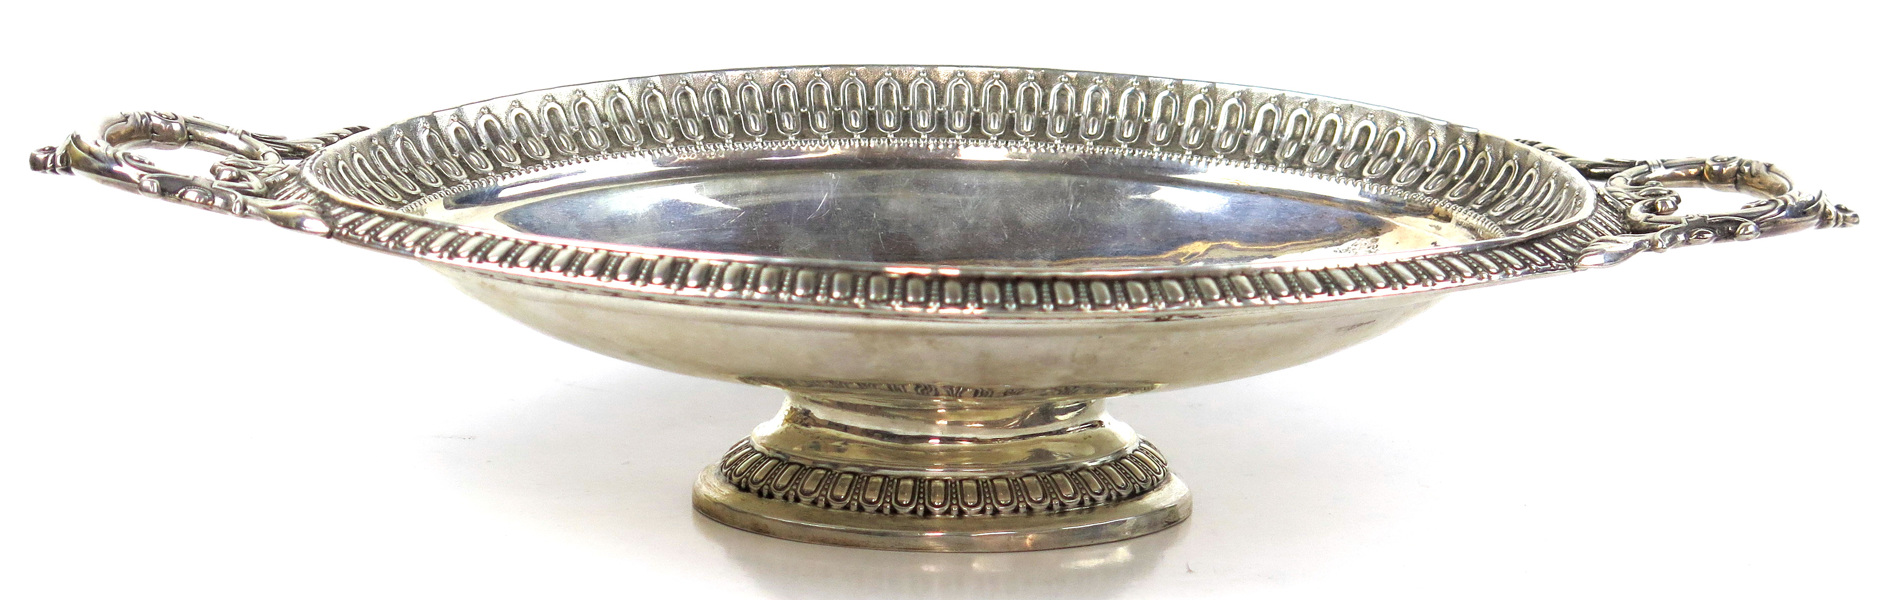 Brödfat, silver, 1800-talets 2 hälft, dekor av akantus mmed, ovalt med genombrutna hänklar, _3237a_8d869371c27cbbe_lg.jpeg